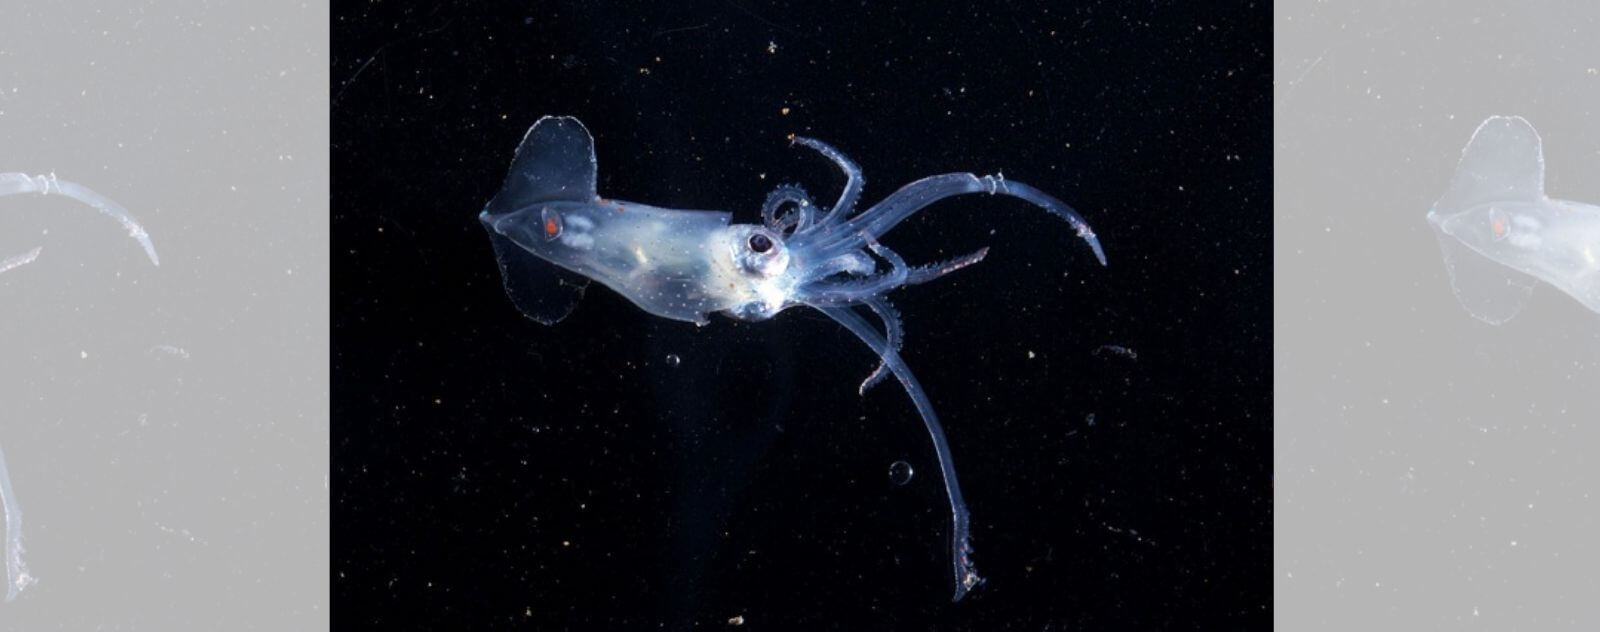 Pelagic octopus